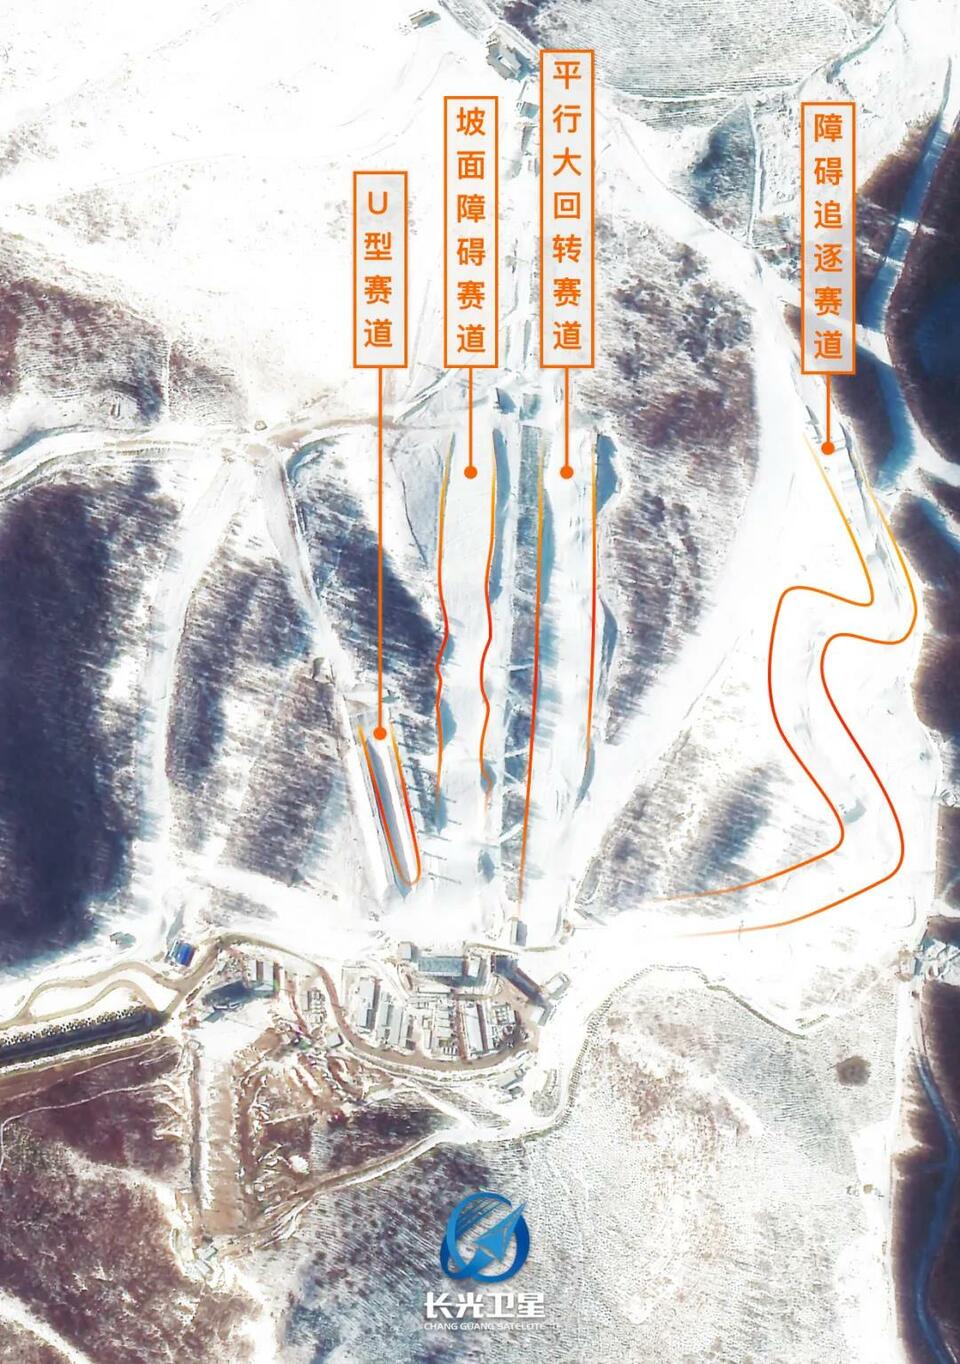 卫星美图，这是冬奥场馆最新冬装照